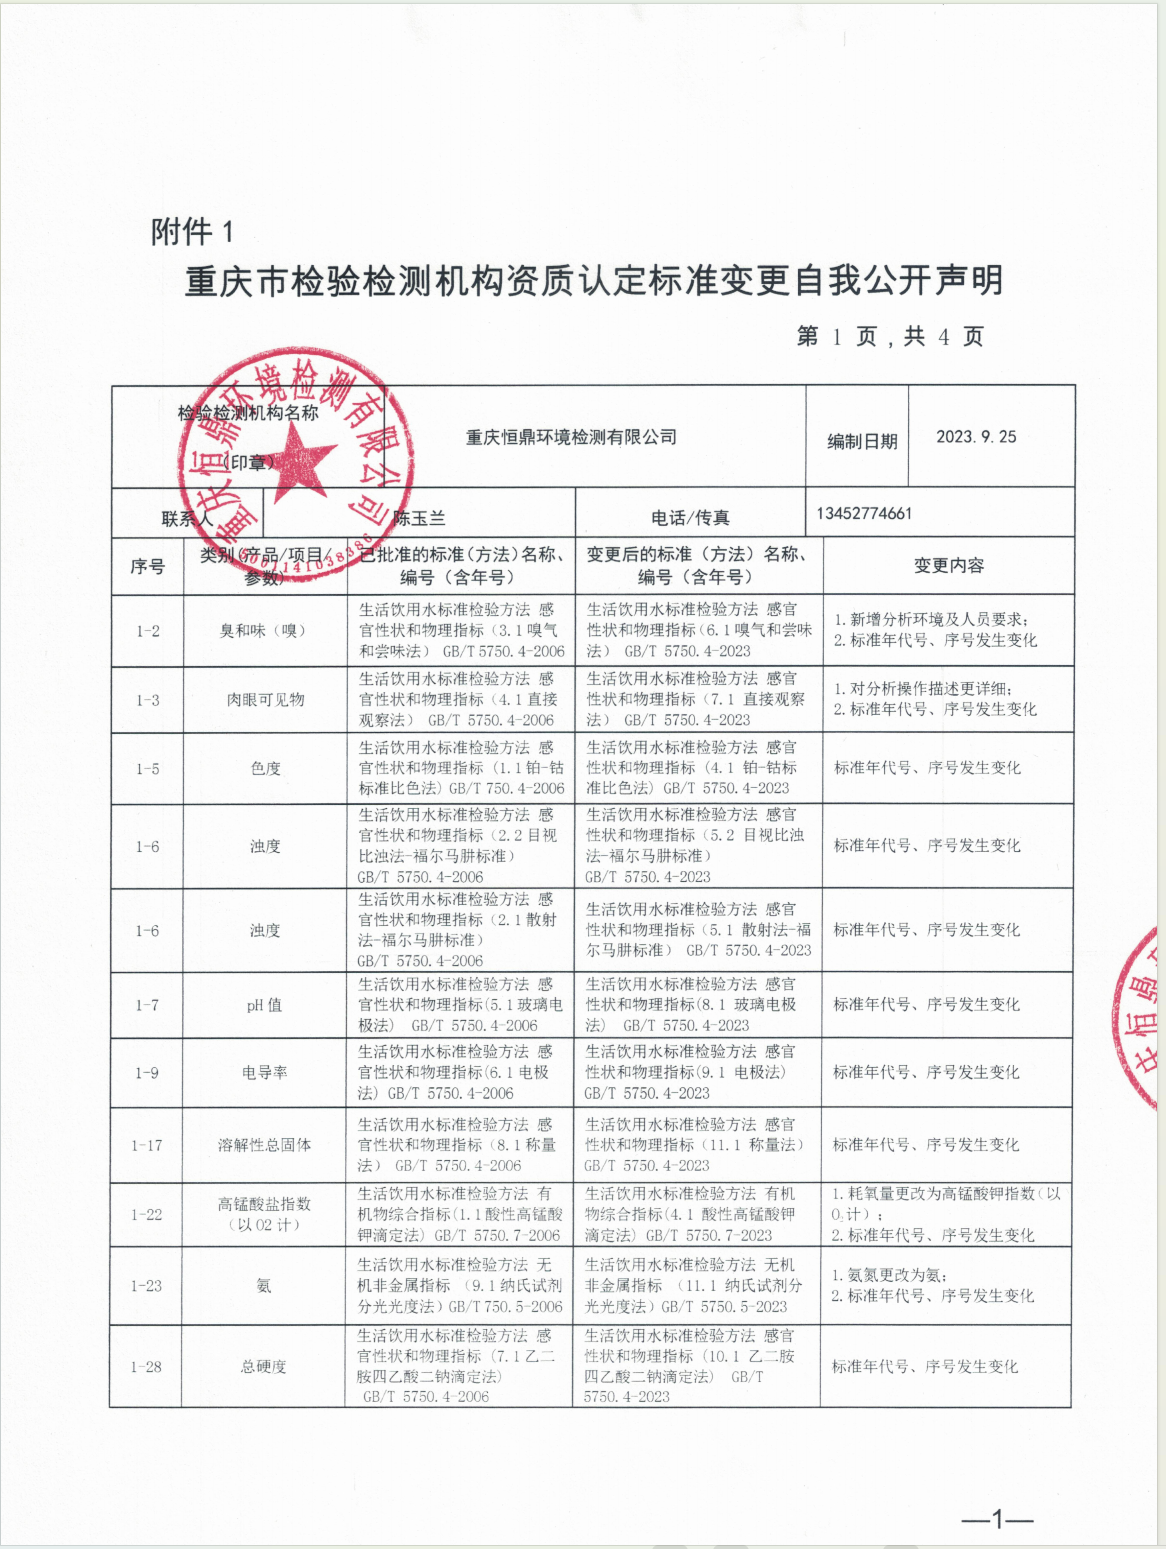 重庆市检验检测机构资质认定标准变更自我公开声明